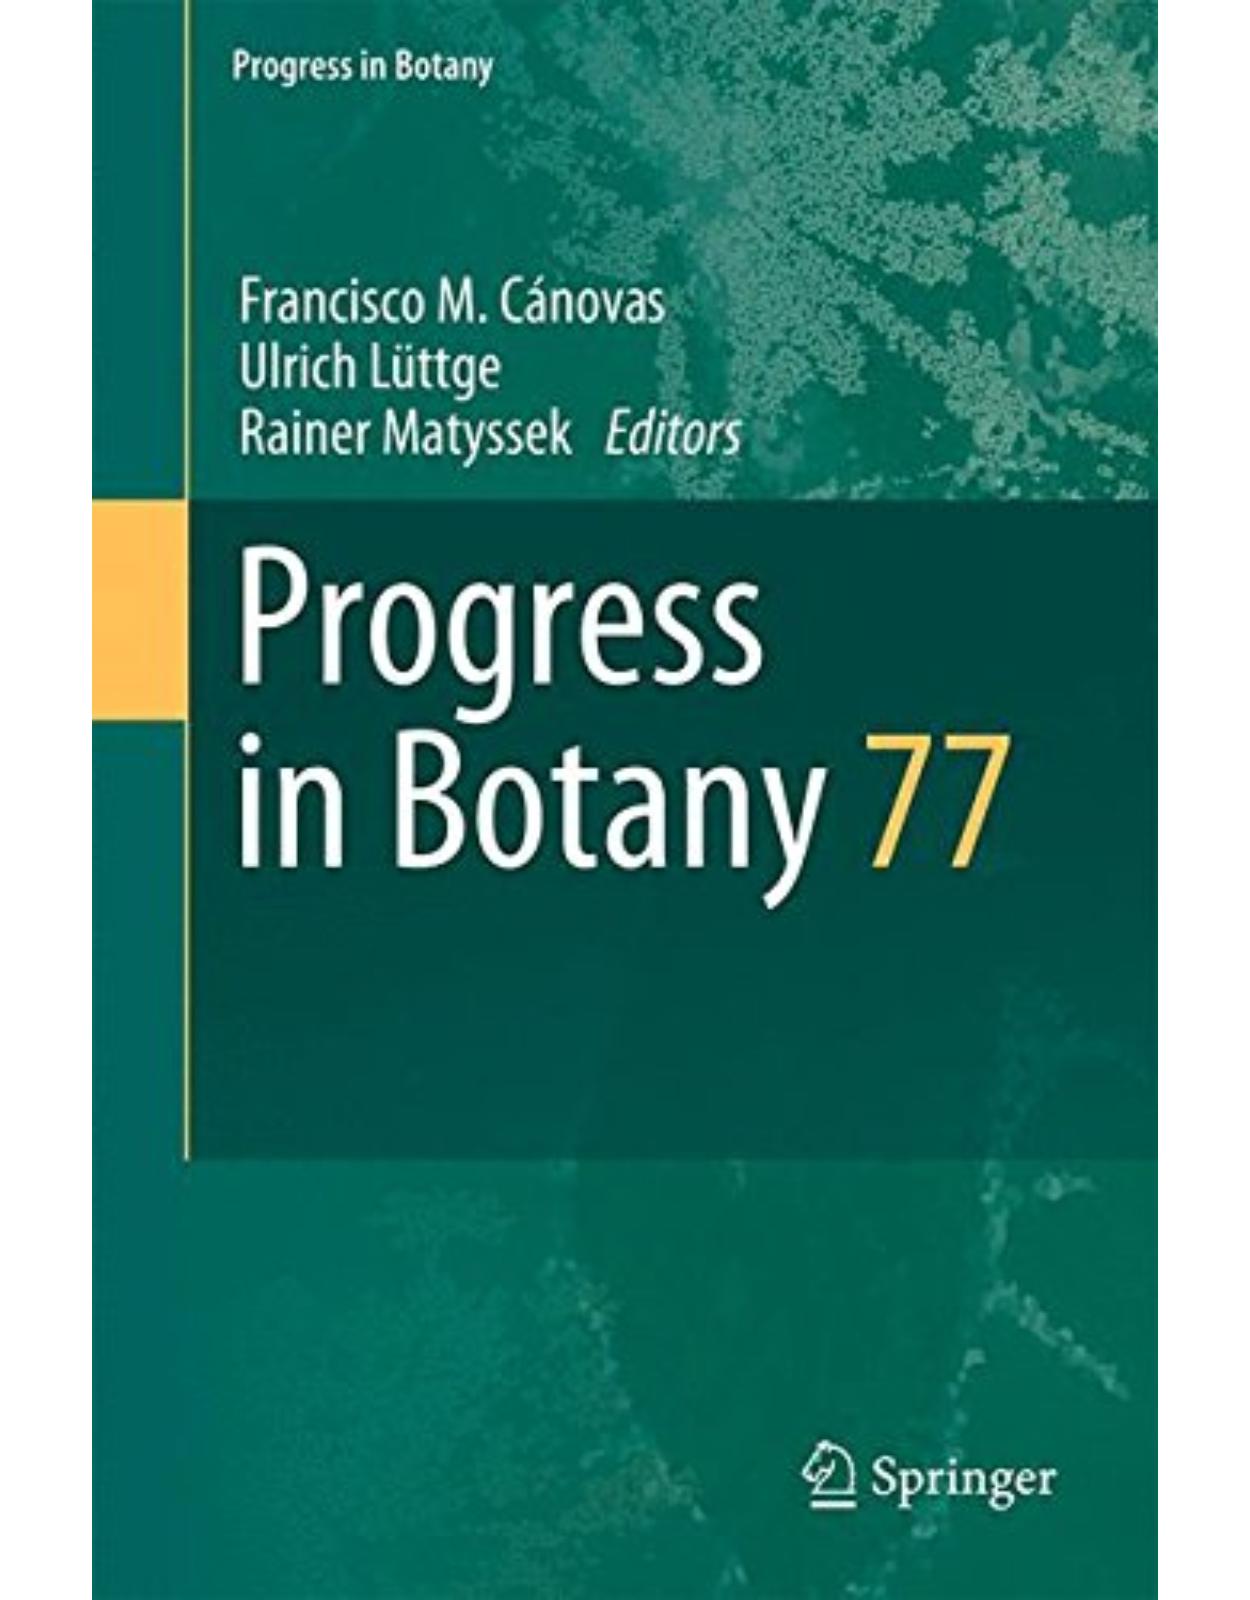 Progress in Botany 77 